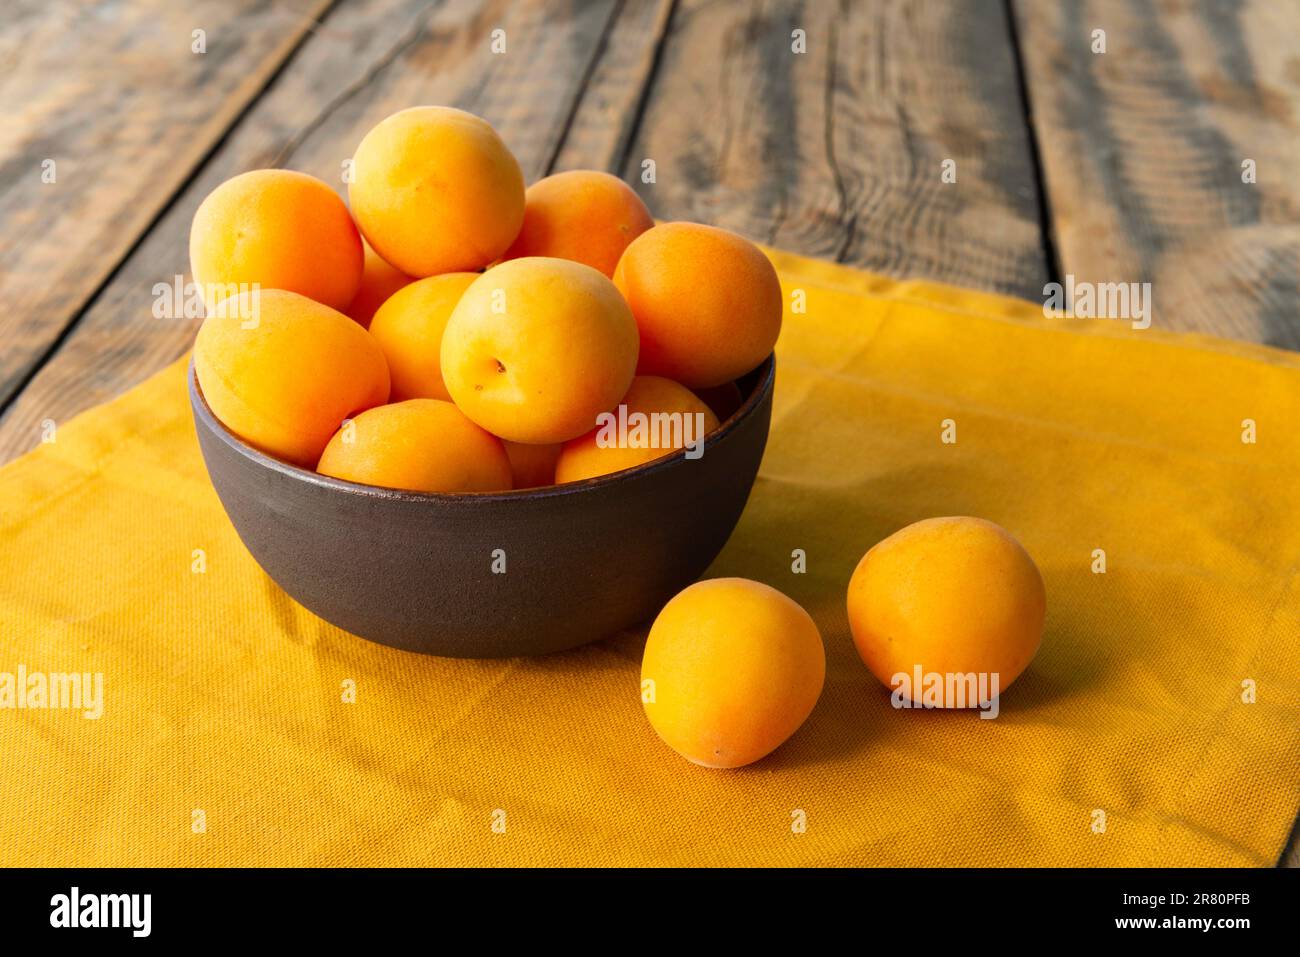 Abricots jaunes mûrs dans un bol sur une serviette de table Banque D'Images